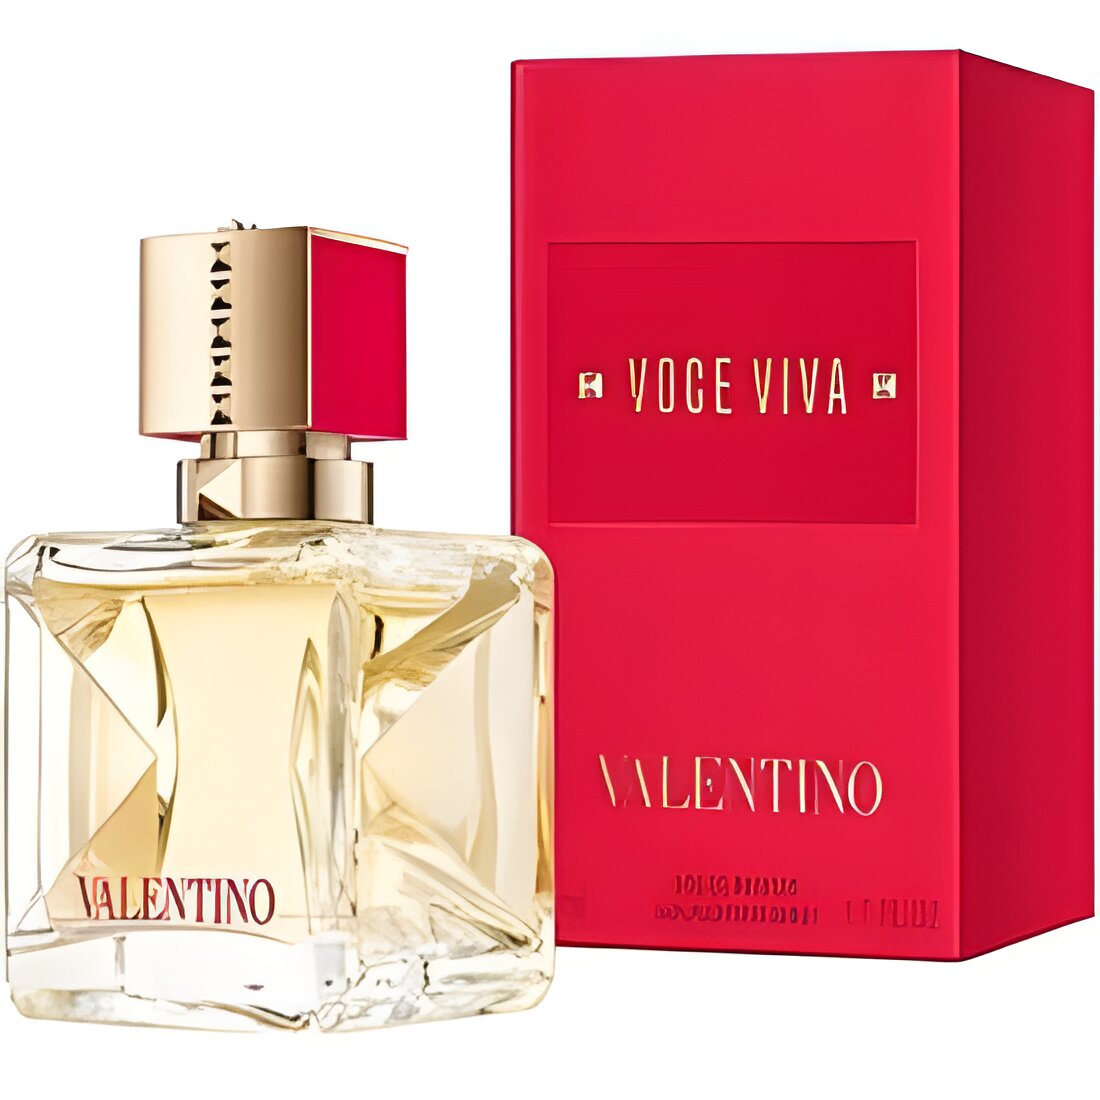 Free VALENTINO VOCE VIVA Eau de Parfum